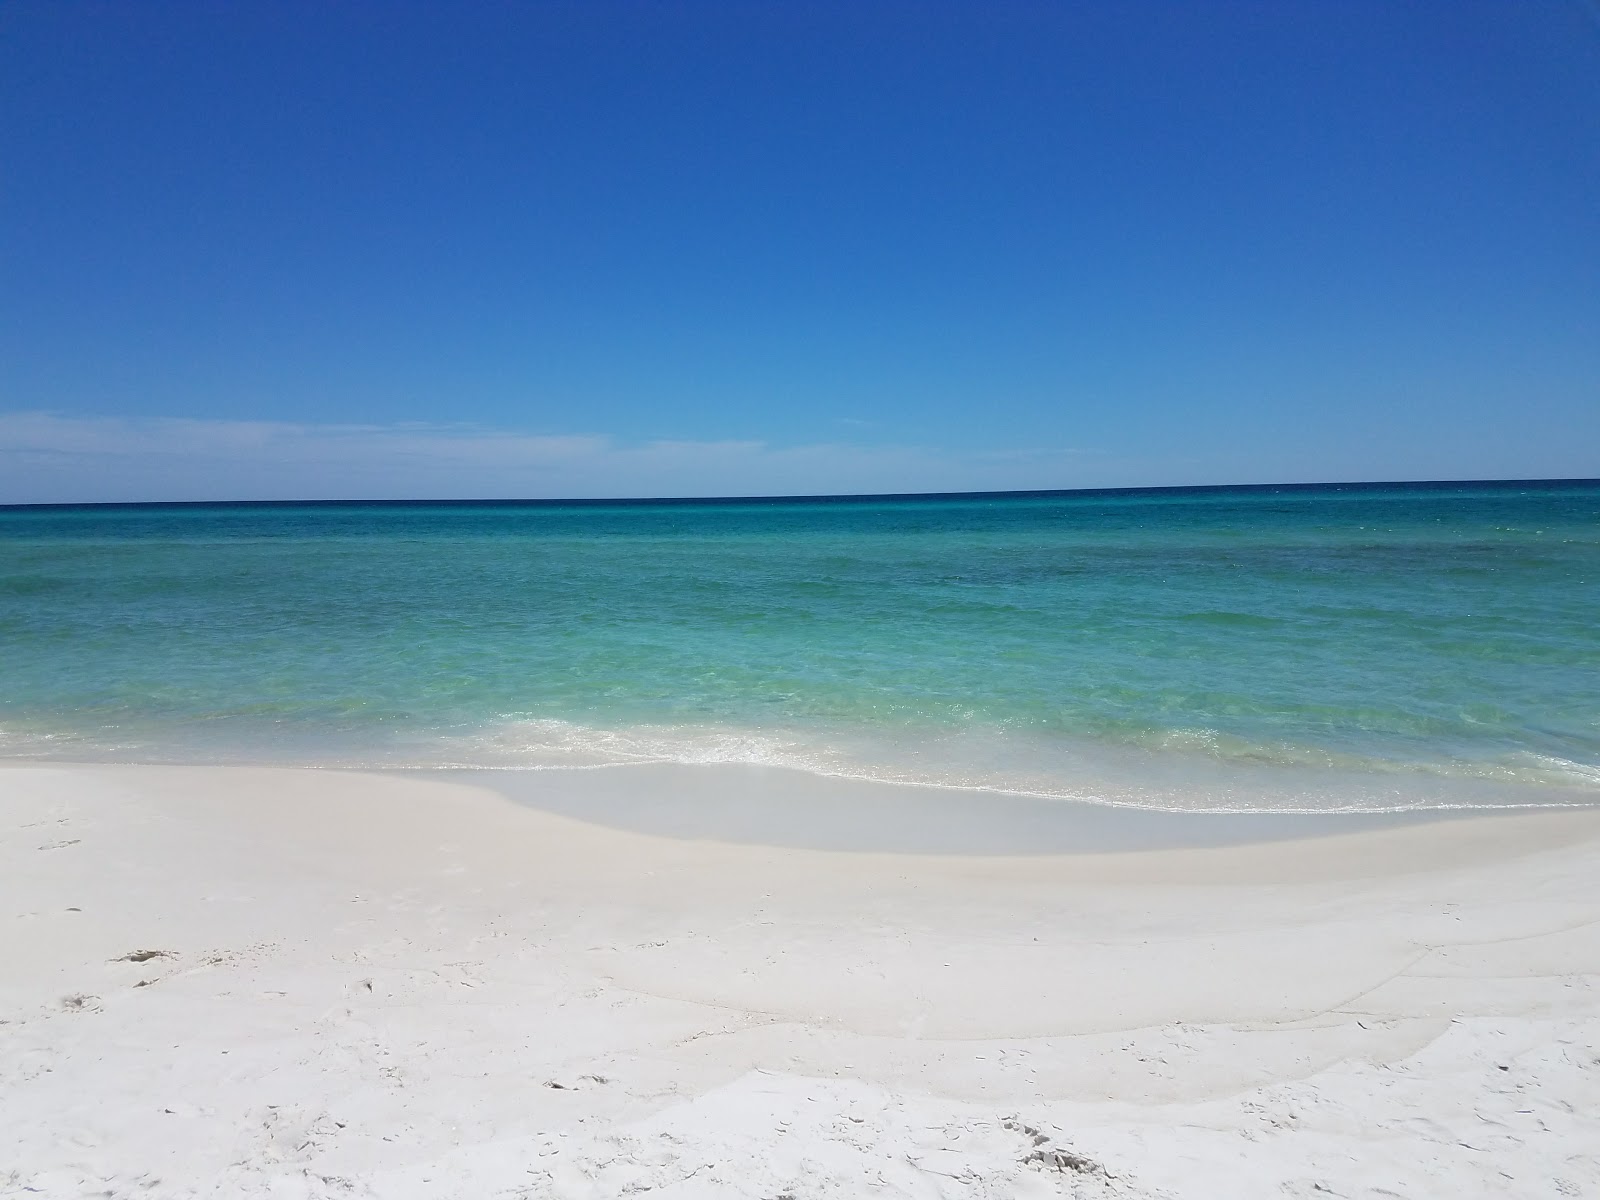 Foto af Gulf Lakes Beach - populært sted blandt afslapningskendere